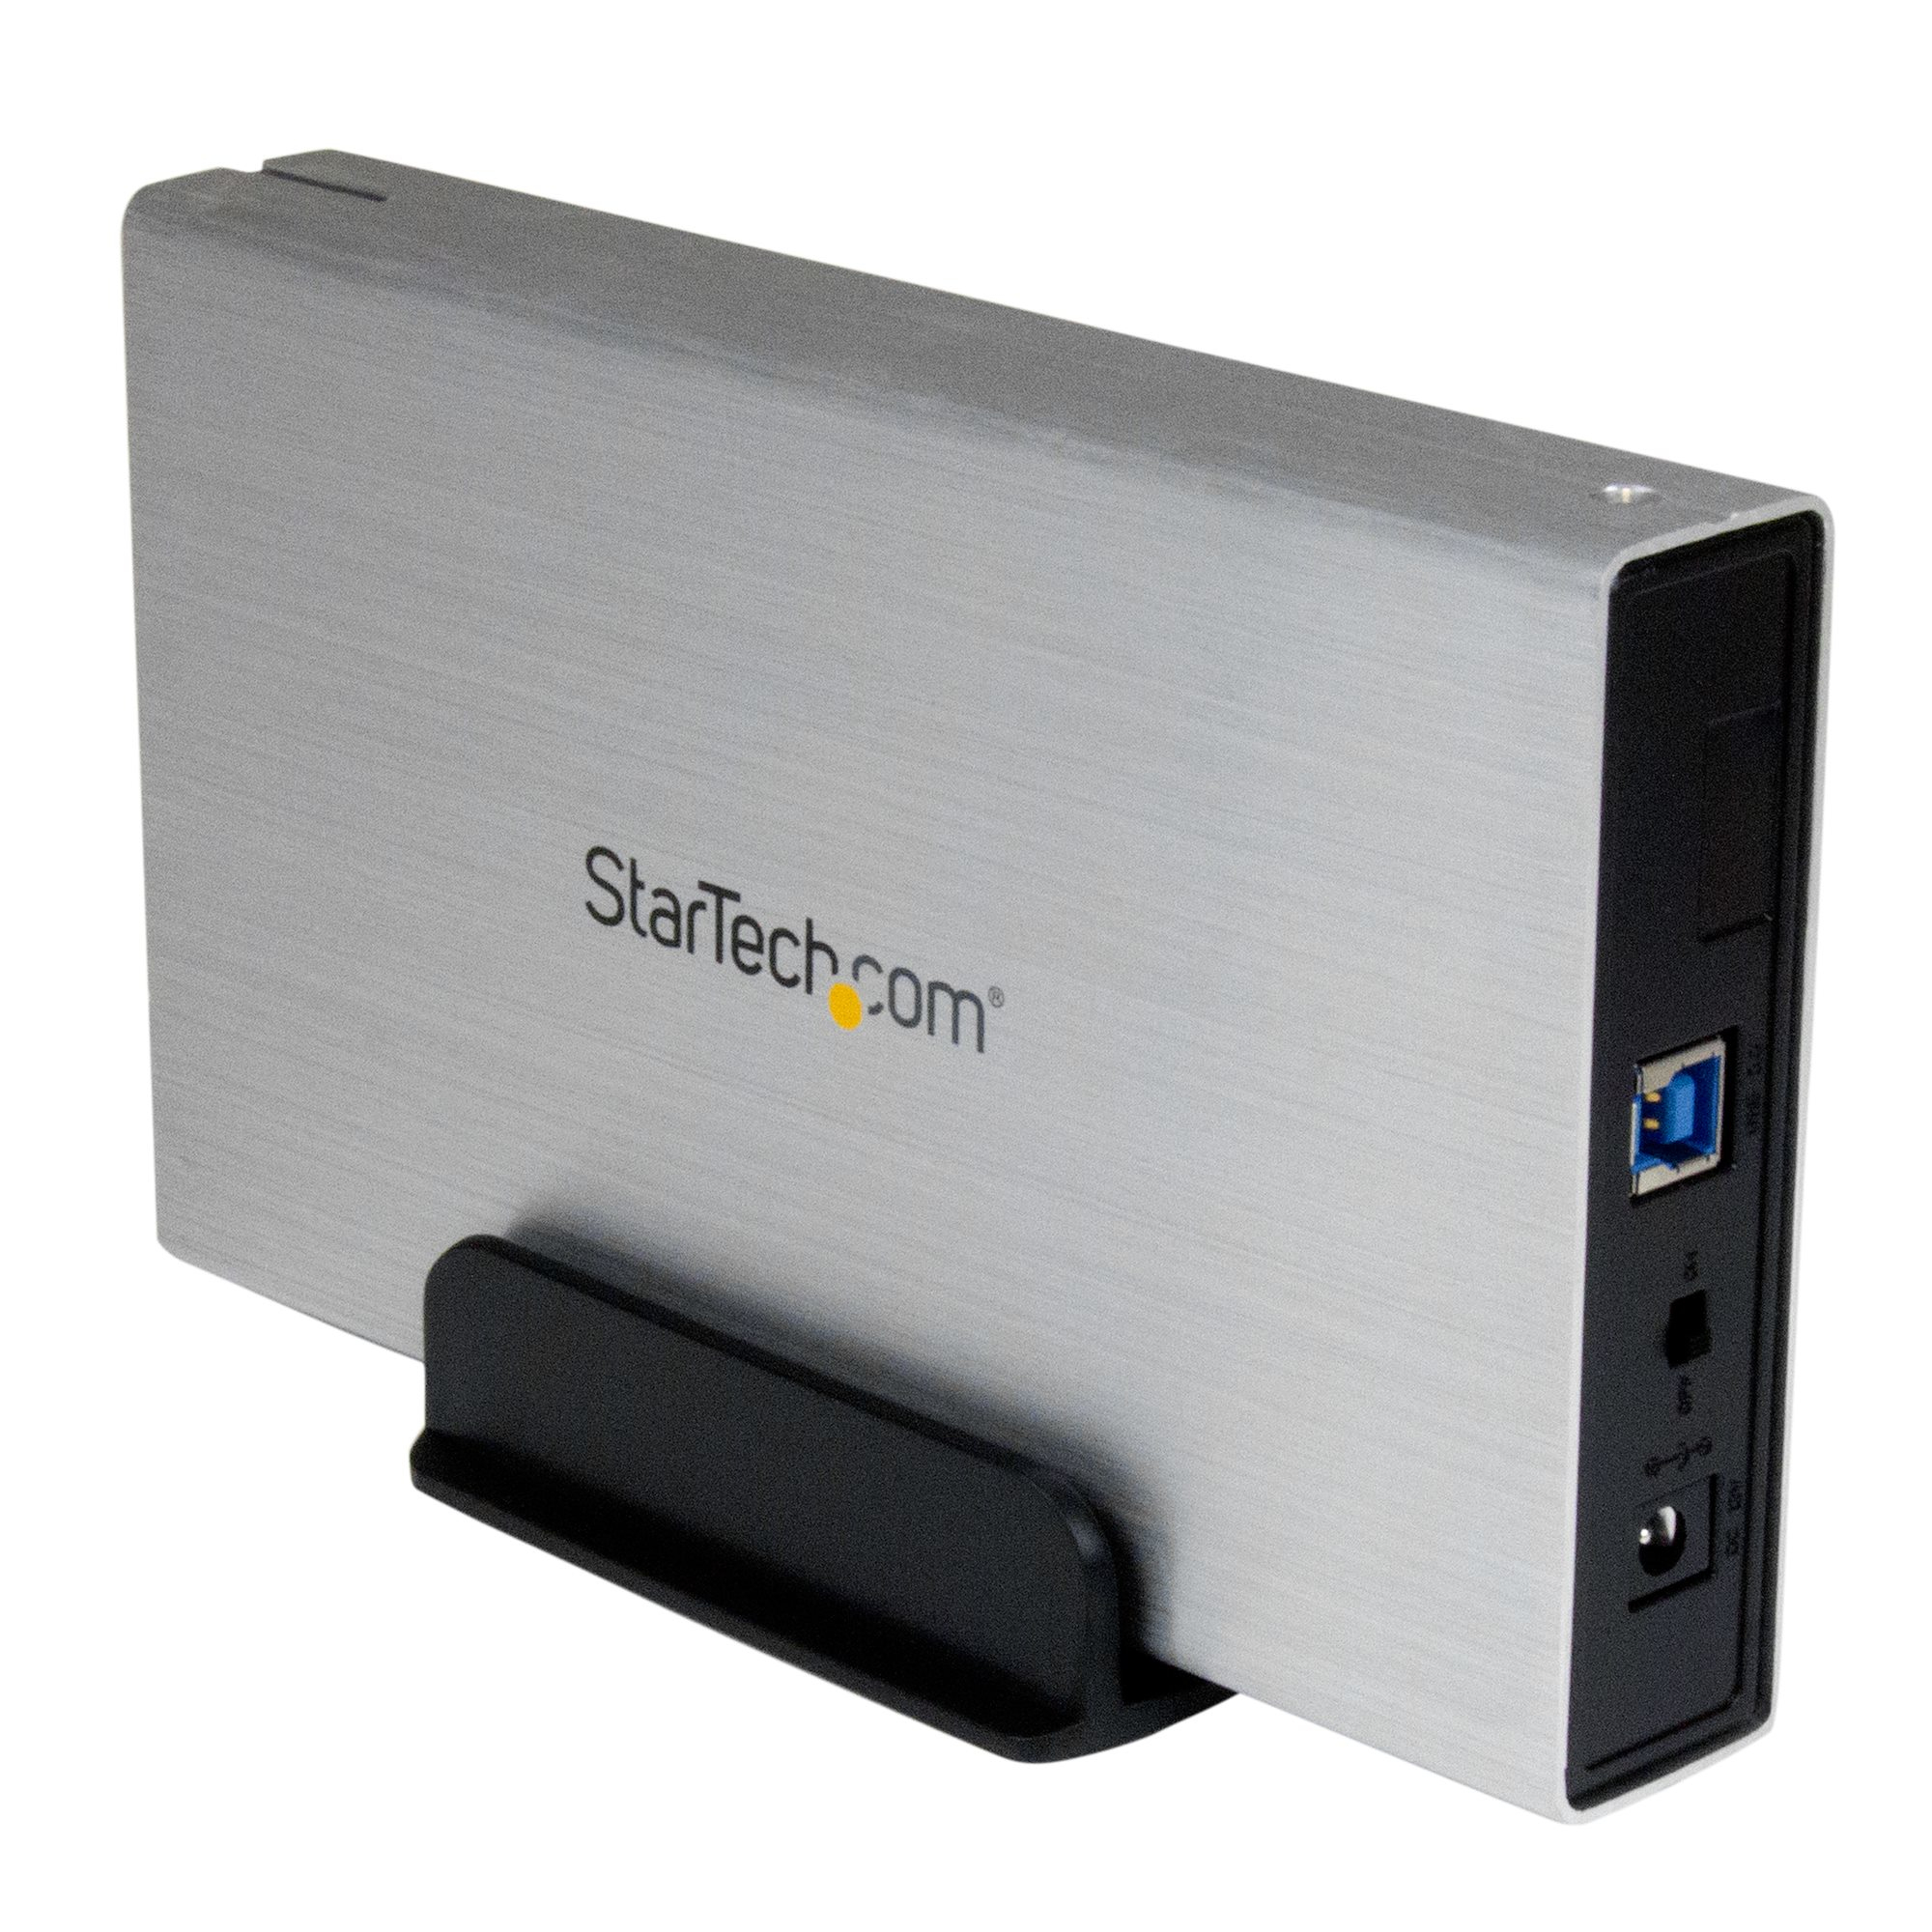 Verdienen Gecomprimeerd Matroos StarTech.com Externe USB 3.0 naar 3,5" SATA III SSD/HDD Behuizing met UASP  - Zilver/Aluminium - USB naar 3.5" SATA Harde Schijf Behuizing (S3510SMU33)  kopen » Centralpoint